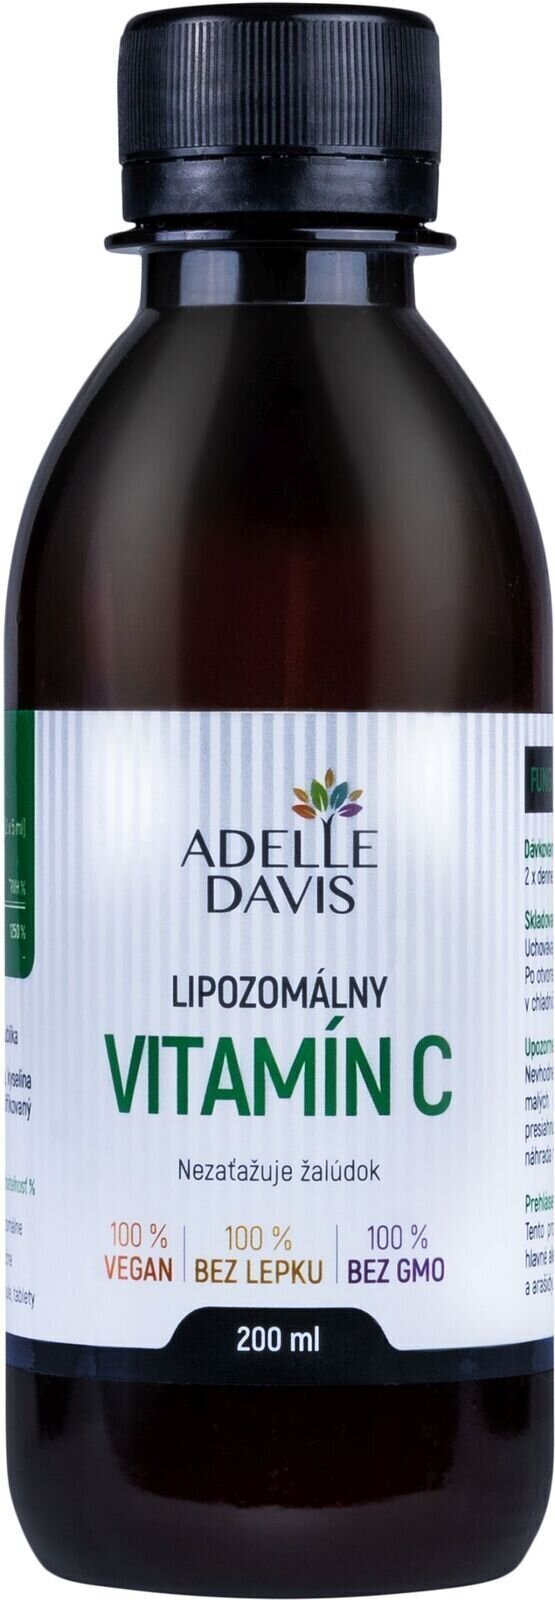 Vitamina C Adelle Davis Liposomal Vitamin C 200 ml Vitamina C